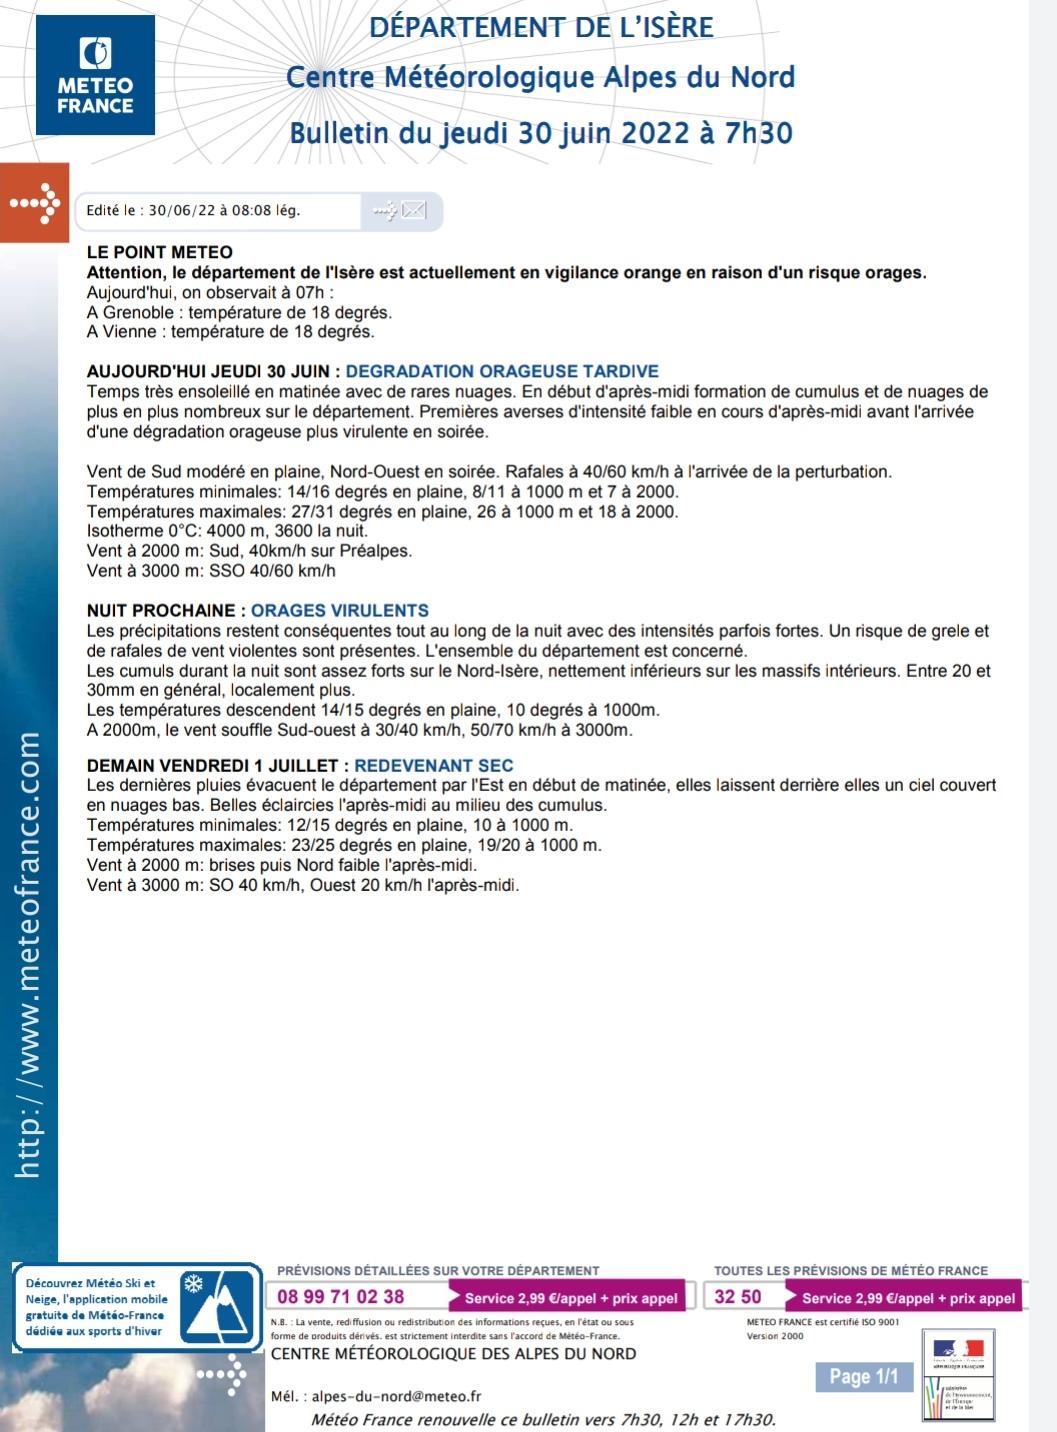 Image de couverture - Attention ! Vigilance Orange en raison d'un risque Orages 30 juin 2022!